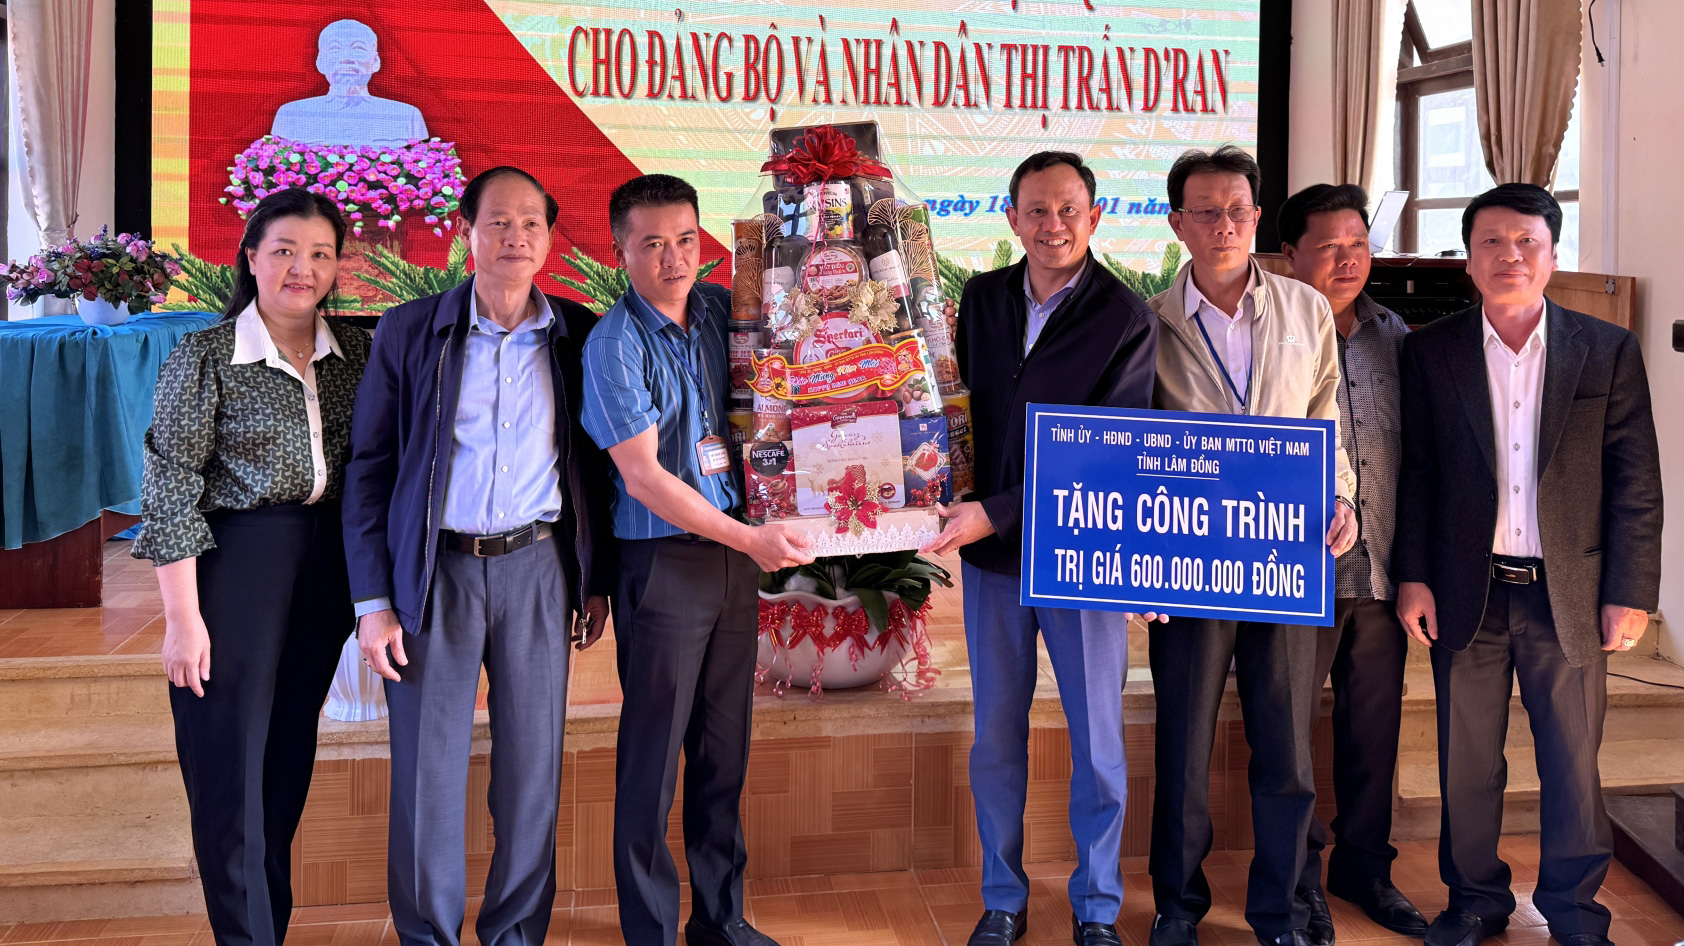 Đoàn công tác trao tặng công trình trị giá 600 triệu cho thị trấn Dran